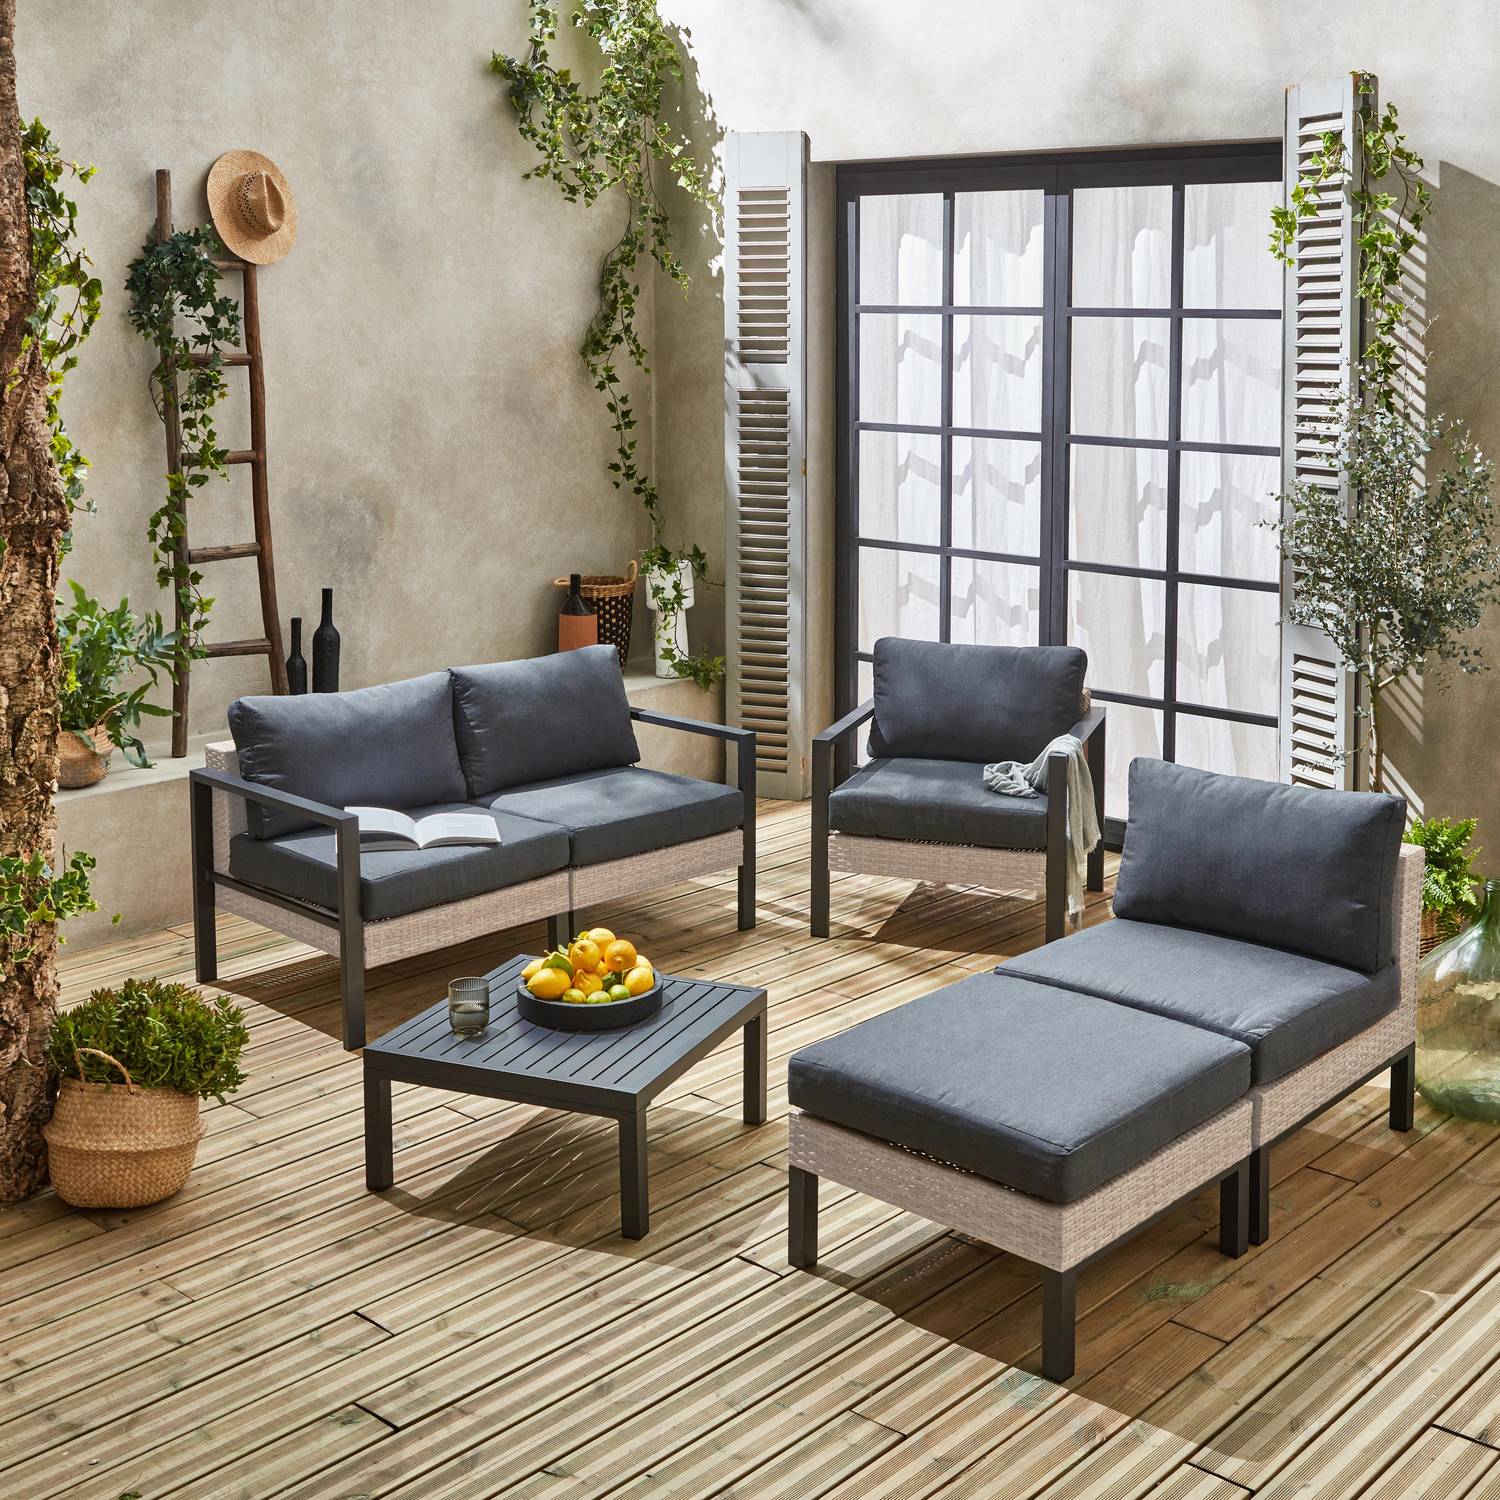 Set di mobili da giardino VELLETRI, grigio scuro, alluminio, resina intrecciata, 5 posti L68 x P74 x H63/76cm Photo2